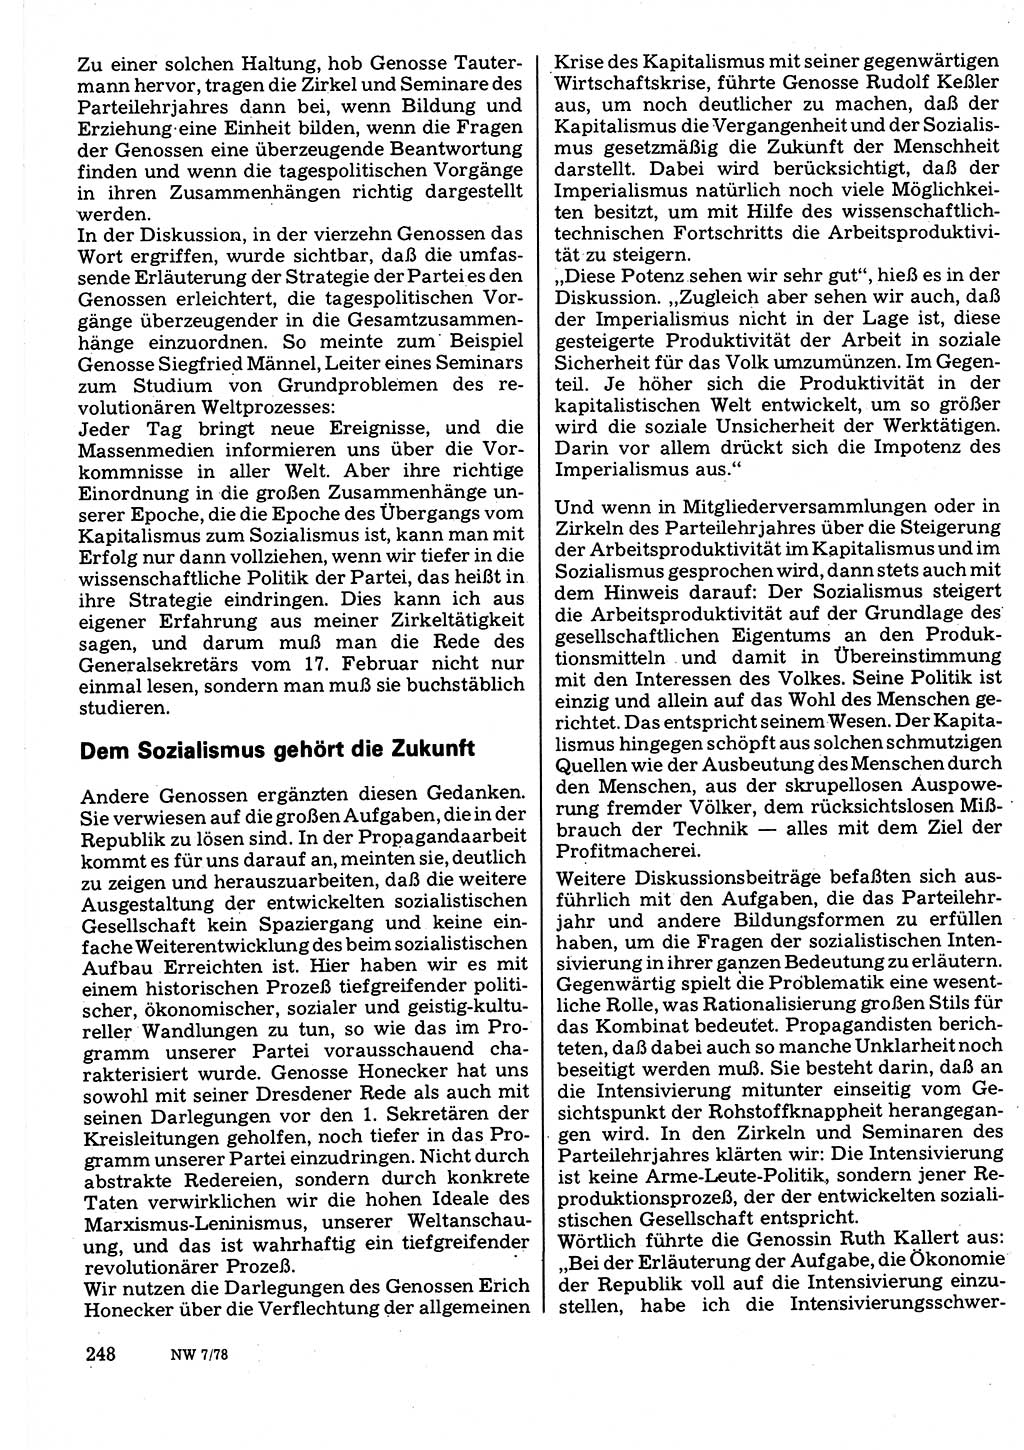 Neuer Weg (NW), Organ des Zentralkomitees (ZK) der SED (Sozialistische Einheitspartei Deutschlands) für Fragen des Parteilebens, 33. Jahrgang [Deutsche Demokratische Republik (DDR)] 1978, Seite 248 (NW ZK SED DDR 1978, S. 248)